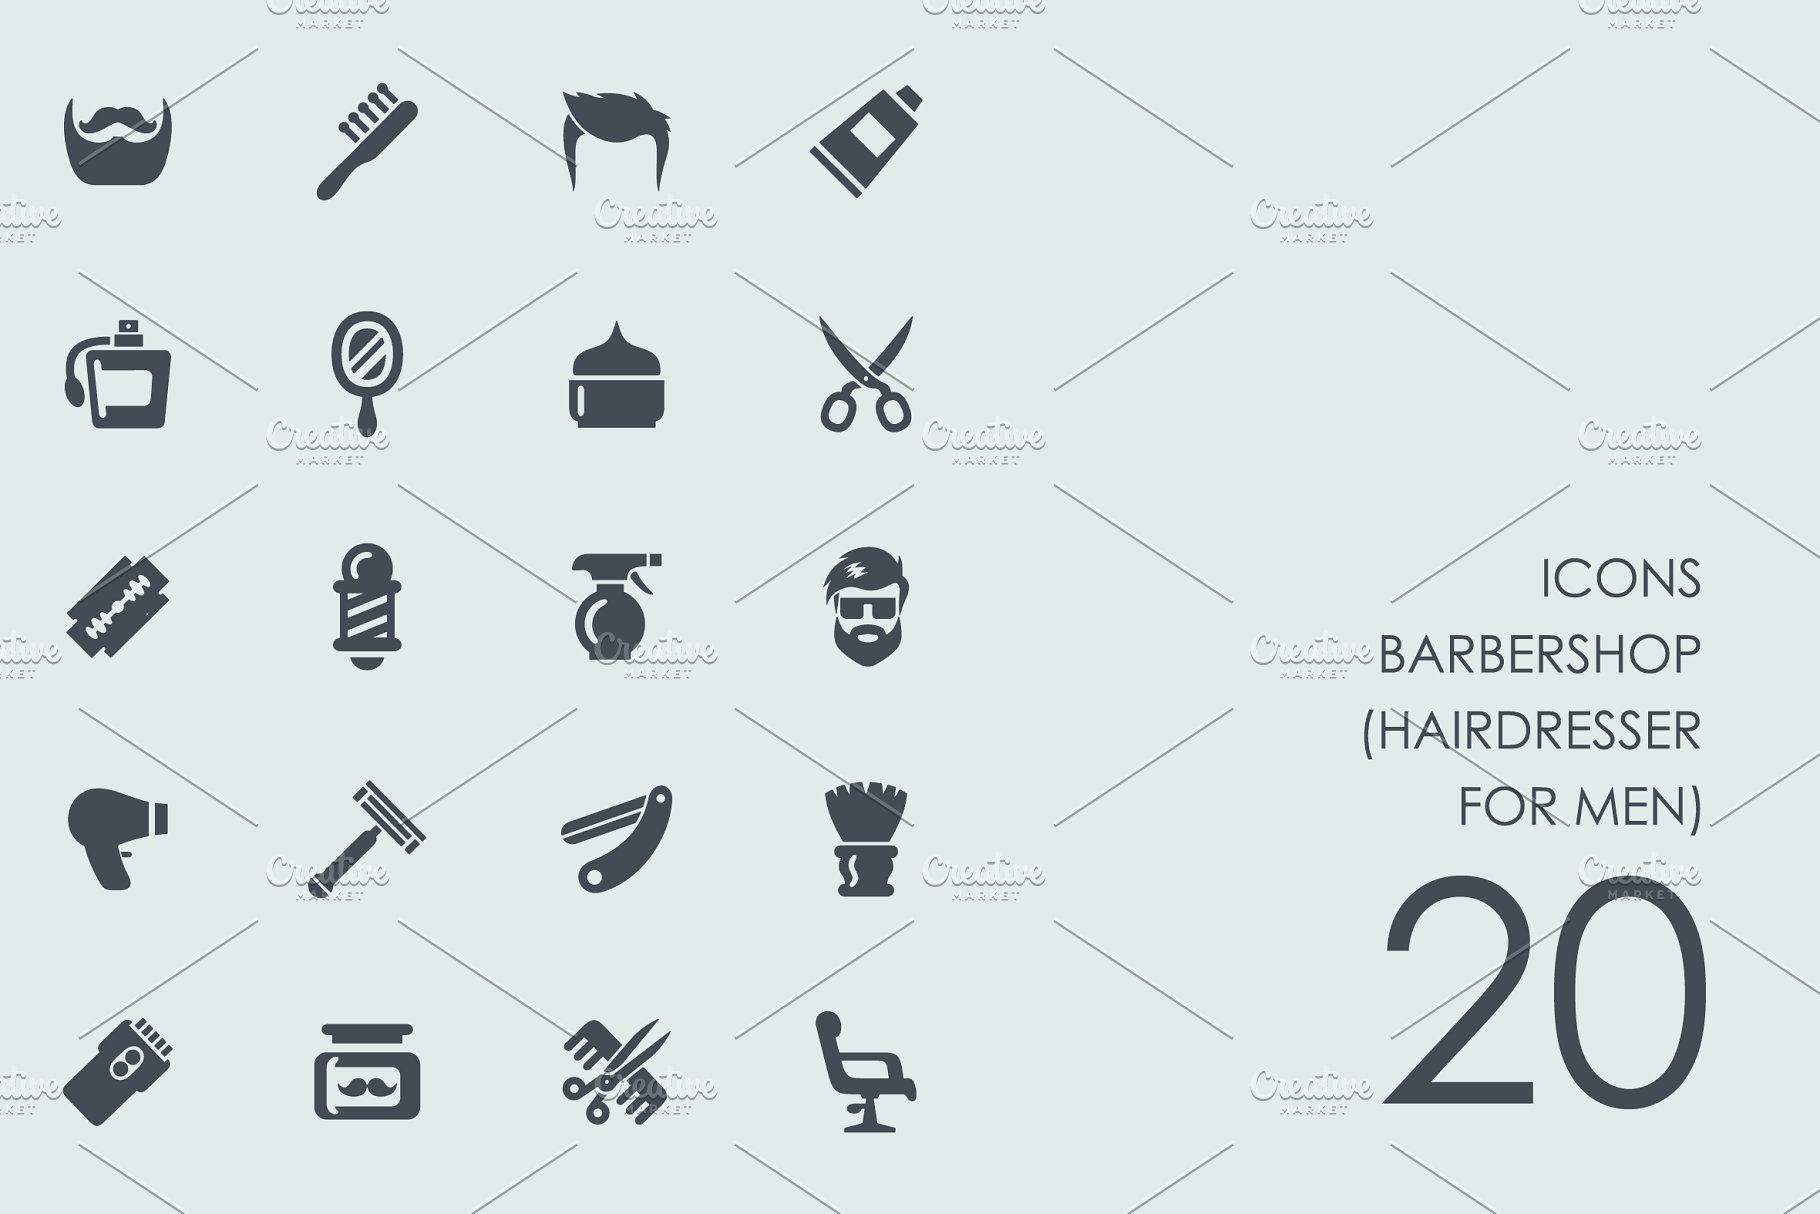 理发店的UI图标套装 Barbershop icons #1